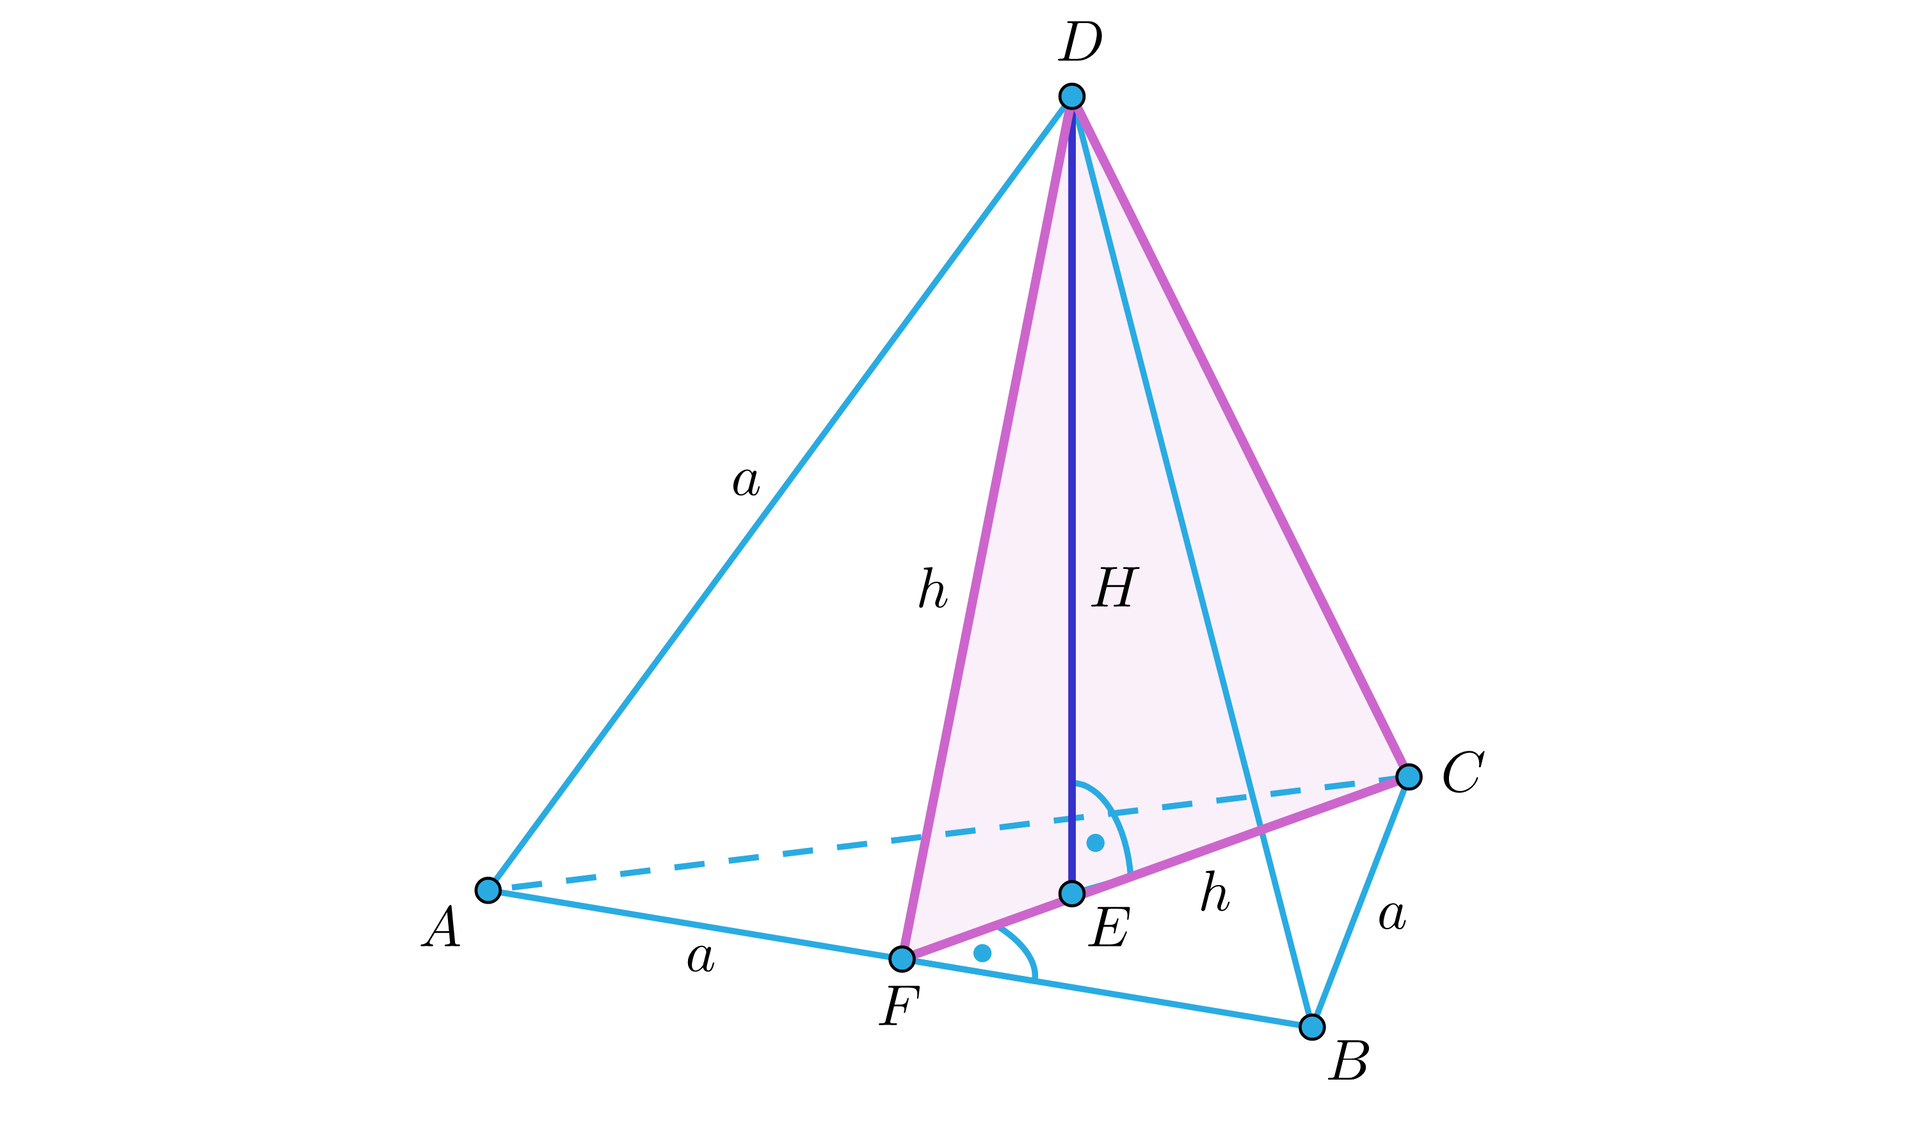 Ilustracja przedstawia czworościan foremny o wierzchołkach A B C D, który ustawiono w taki sposób, że ściana A B C jest podstawą a wierzchołek D wierzchołkiem górnym. Krawędzie czworościanu mają długość a. W czworościanie zaznaczono przekrój trójkątny o wierzchołkach C D F, przy czym punkt F jest spodkiem wysokości podstawy A BC opuszczonej z wierzchołka C na bok AB. Bok CF przechodzi przez punkt E będący spodkiem wysokości wielkie H czworościanu, którą opuszczono z wierzchołka D. Odcinki CF i DF podpisano literami małe h.